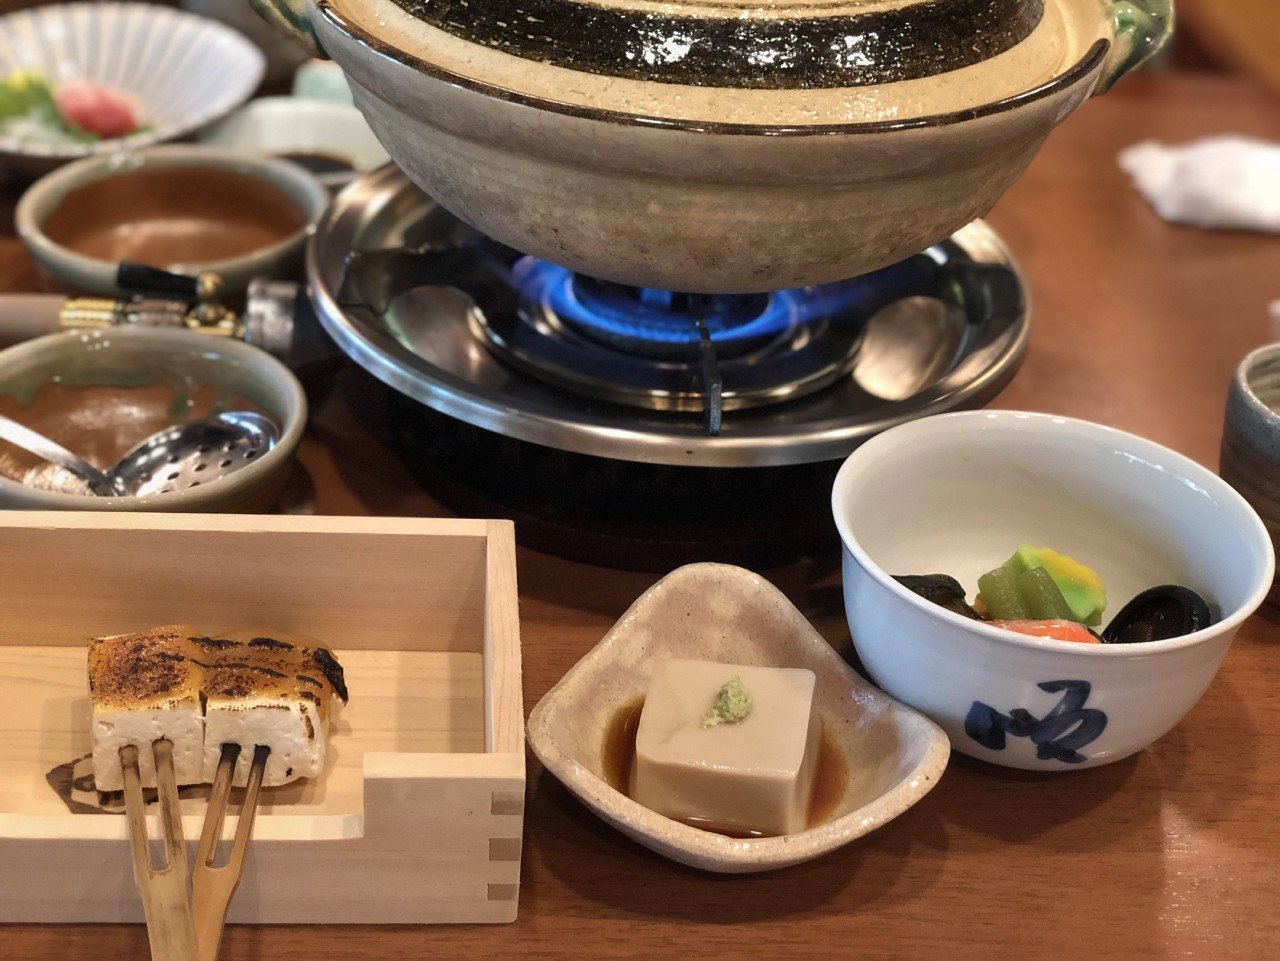 오사카/교토 여행가서 먹은 음식들